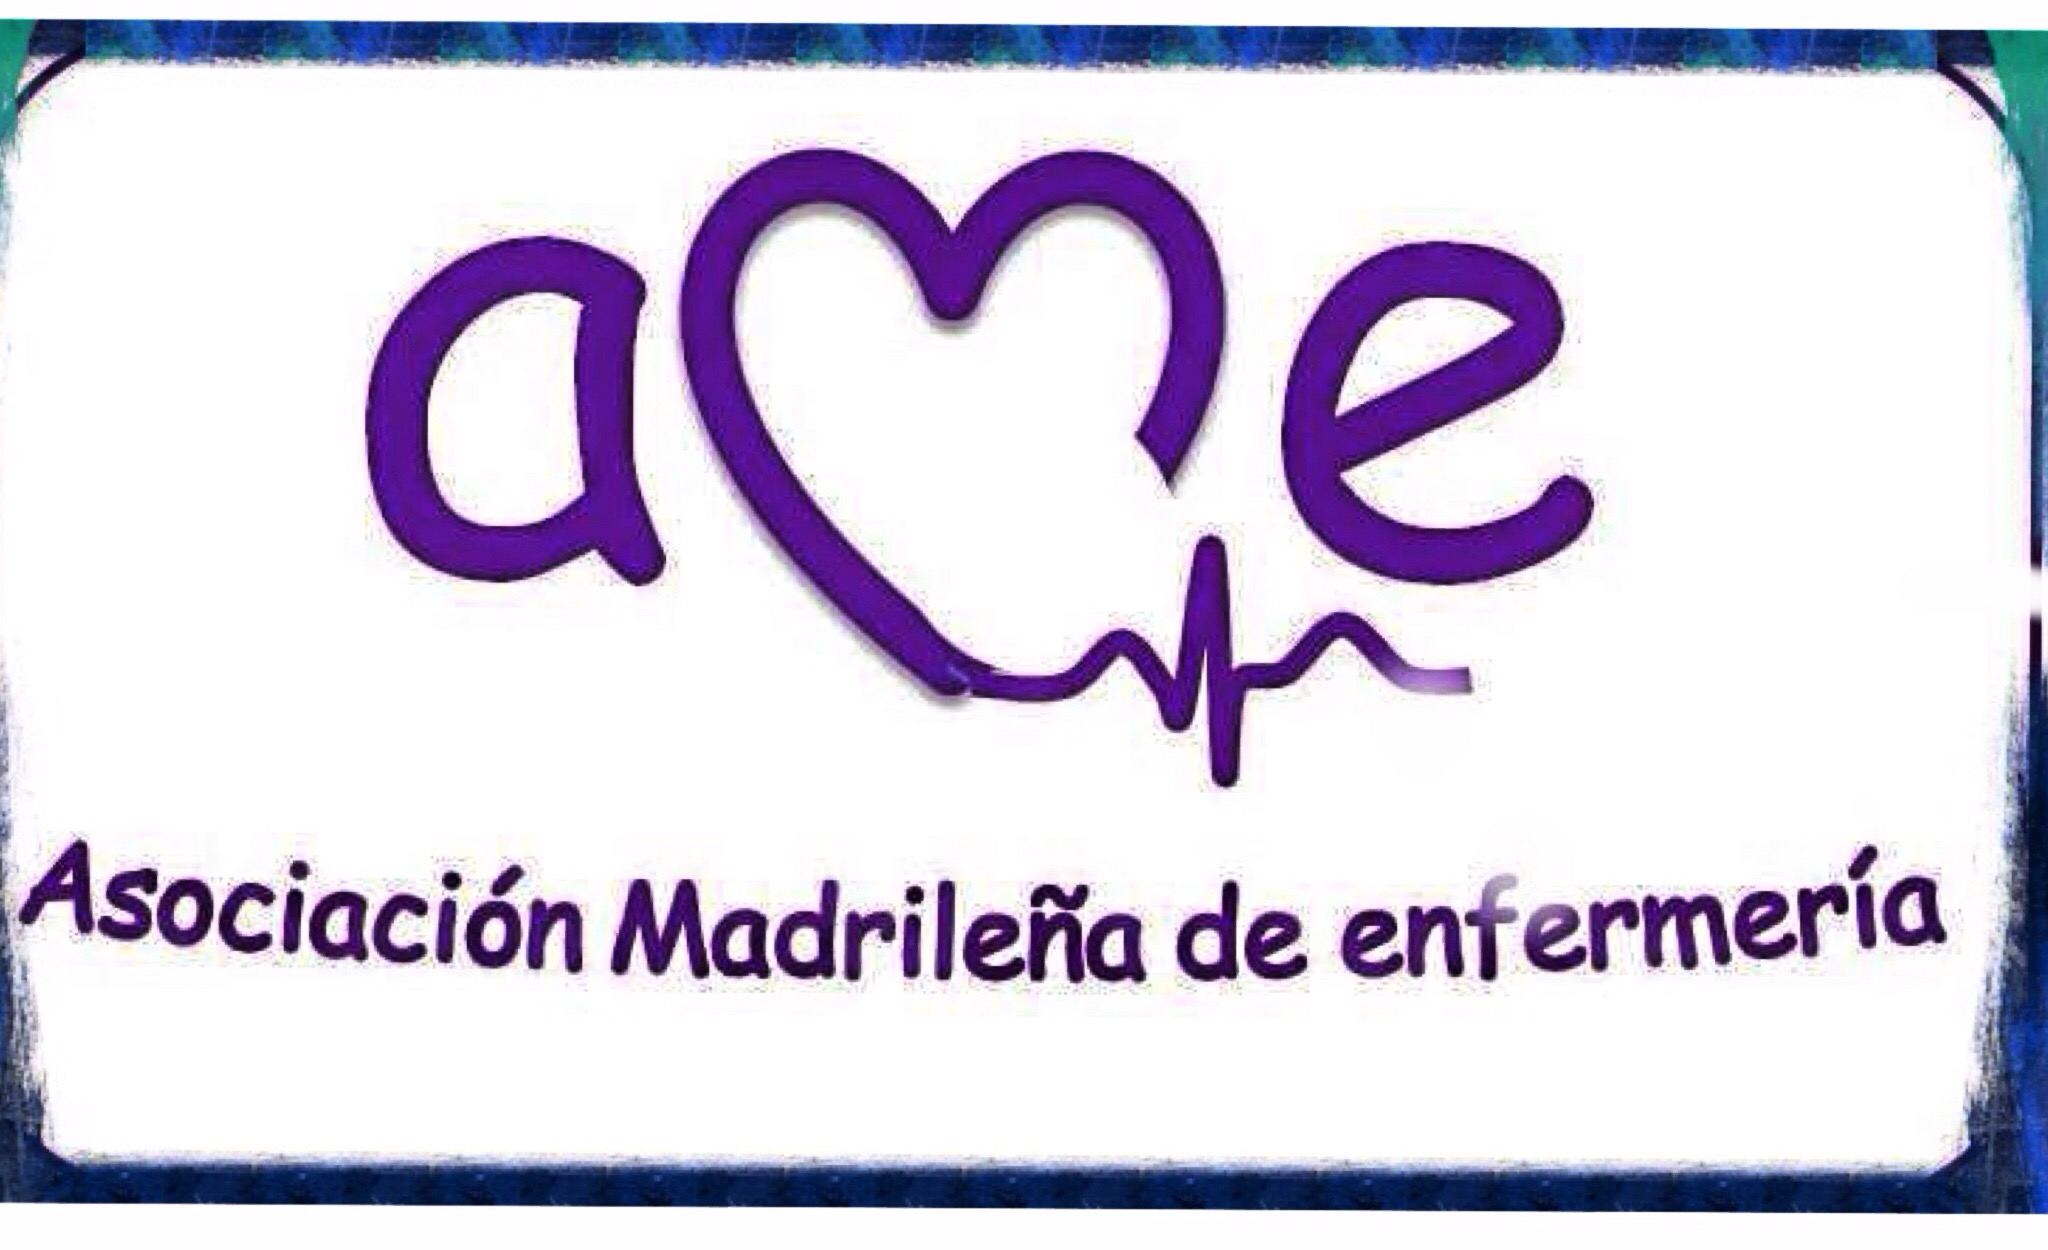 Asociación madrileña de enfermería (AME)